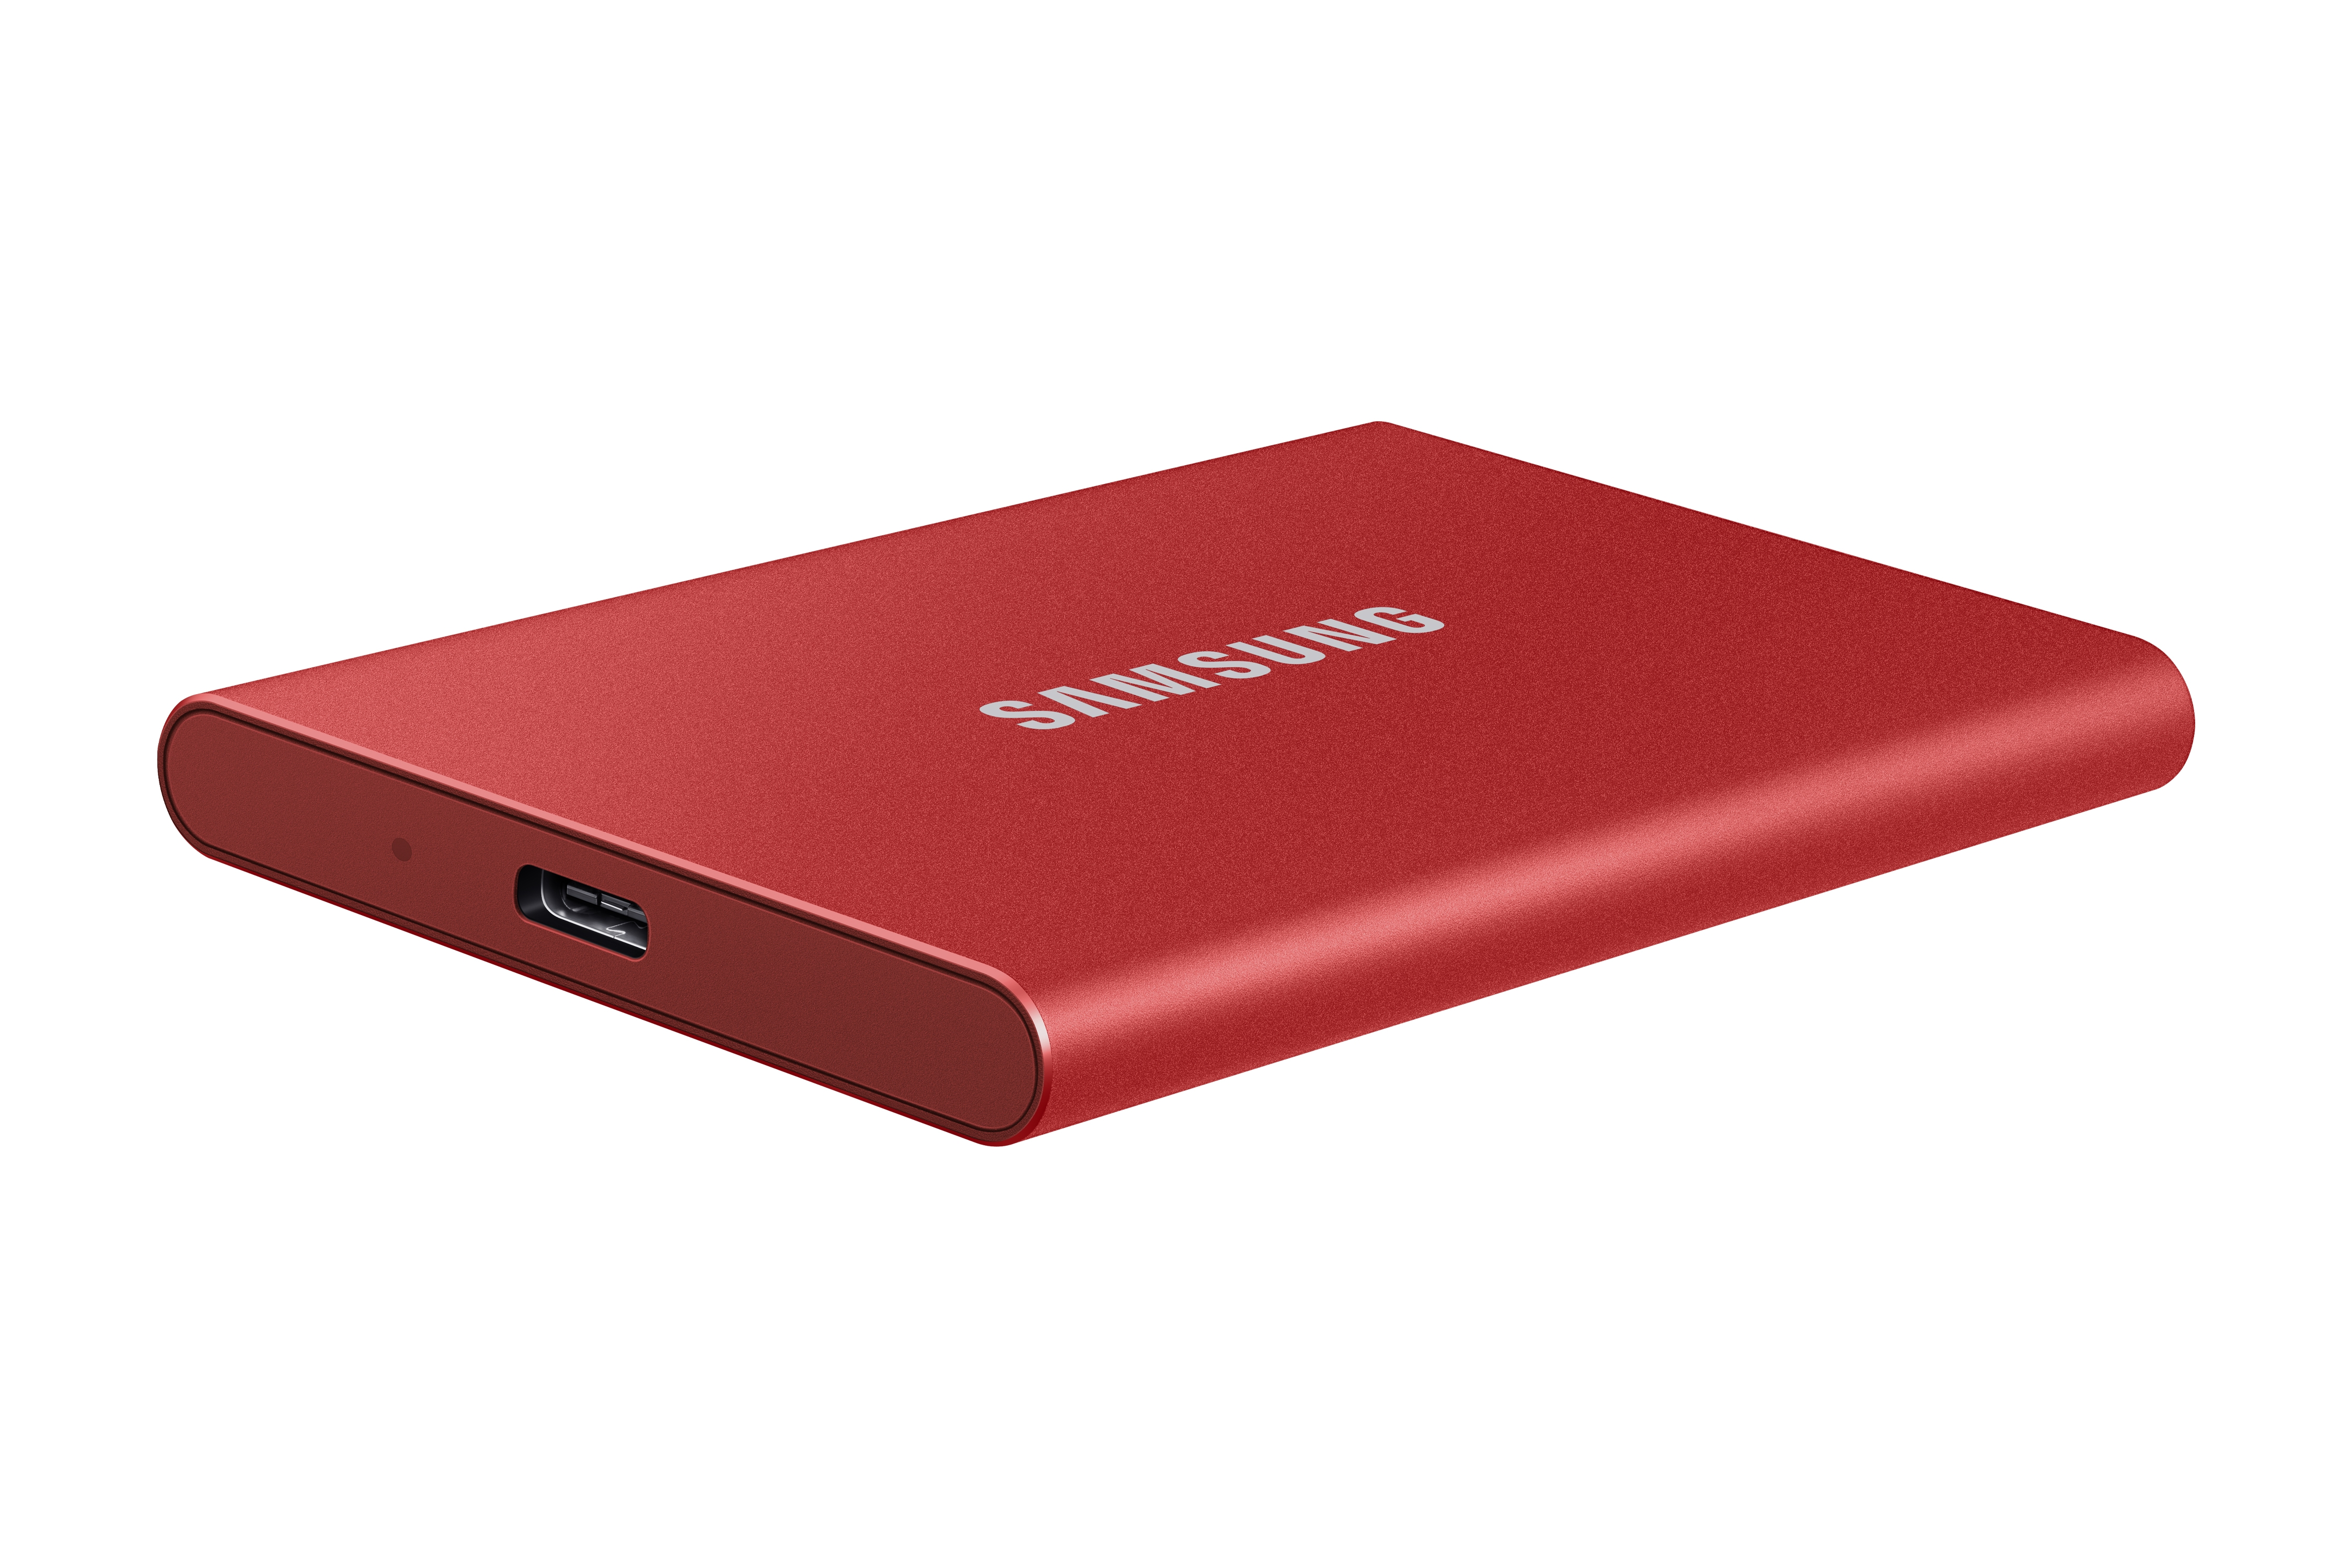 Portable SSD T7 USB 3.2 2TB (Red) Memory & Storage - MU-PC2T0R/AM